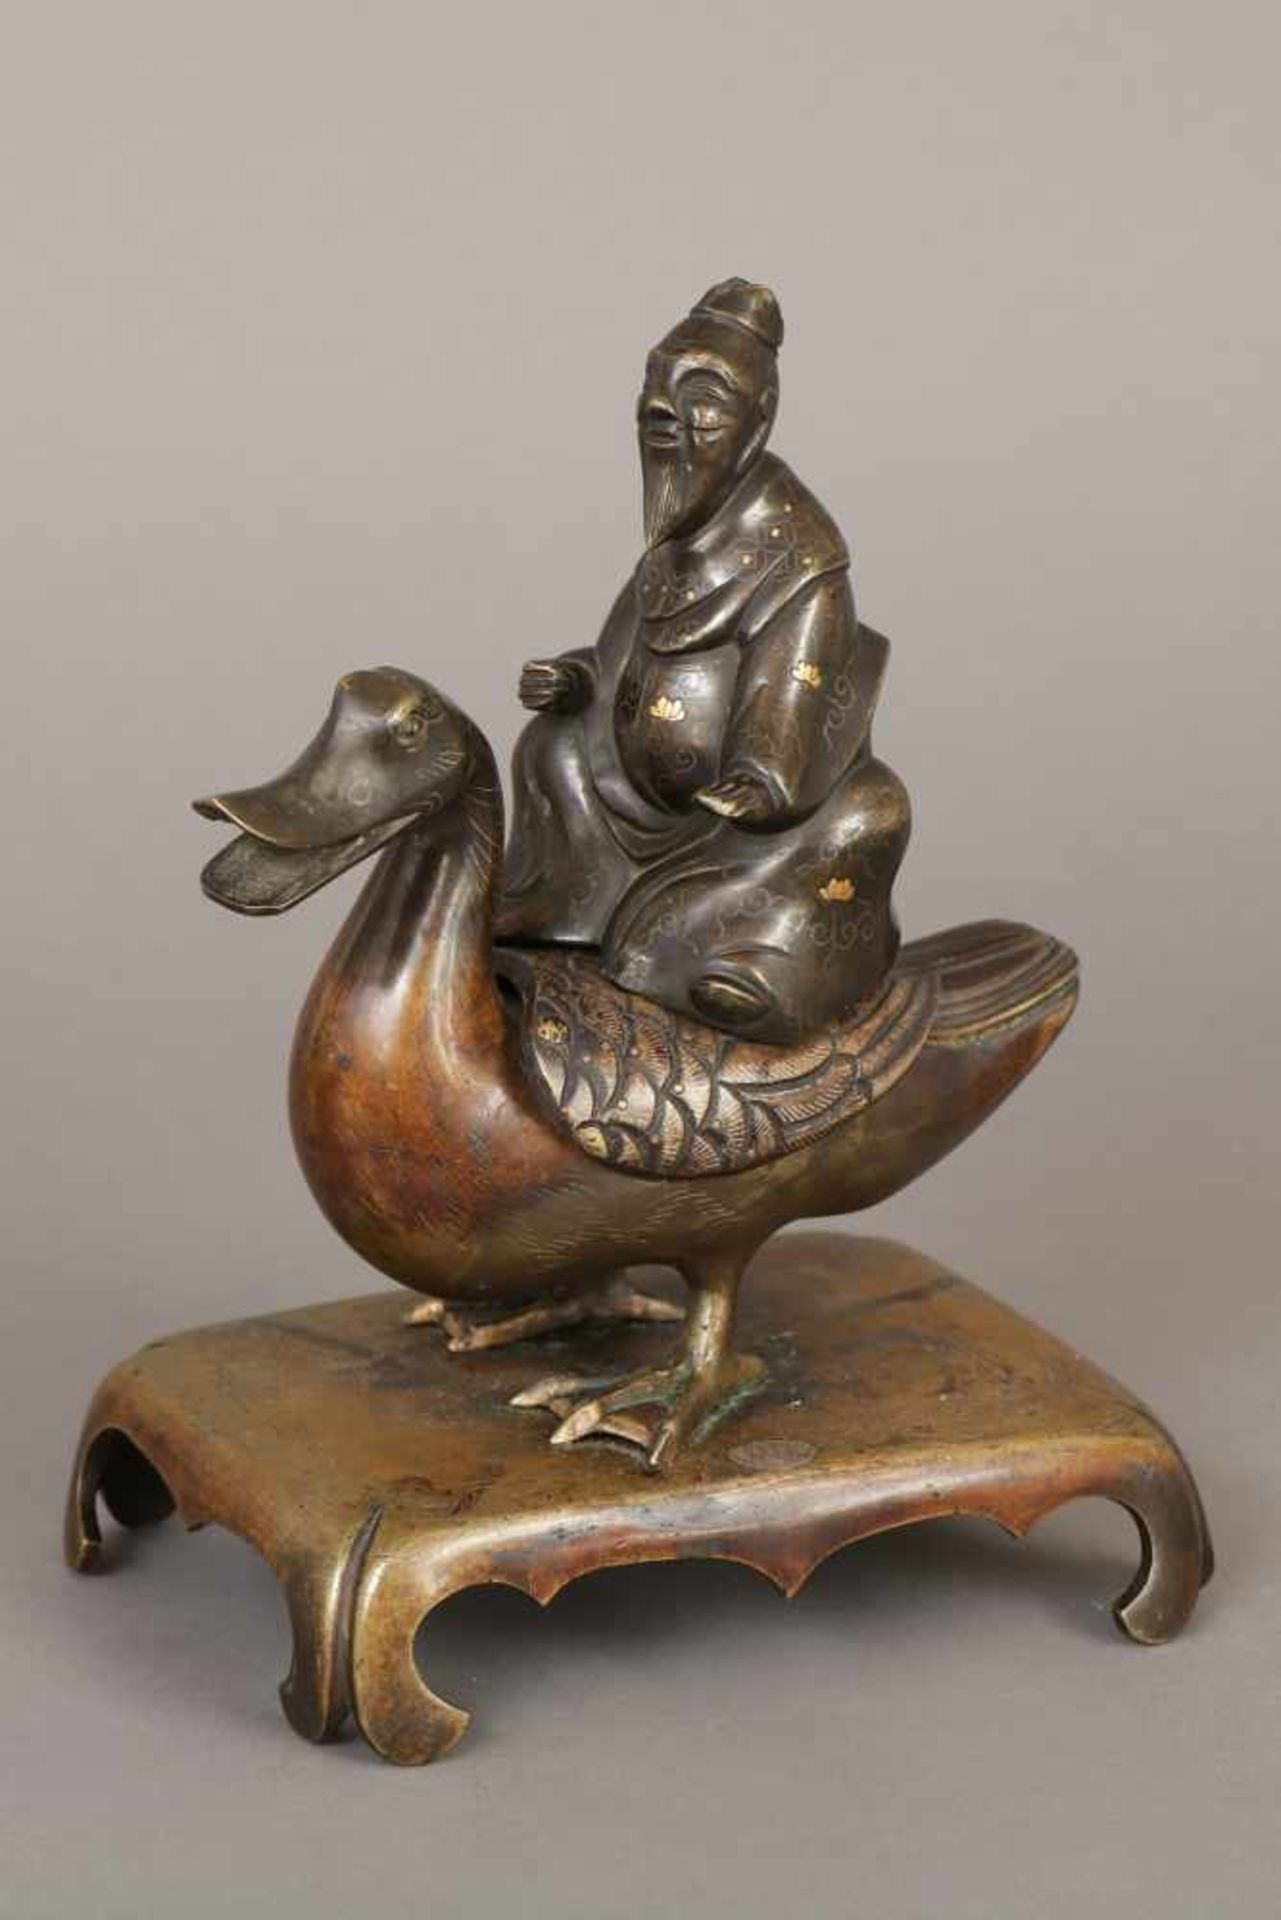 Chinesisches Räuchergefäß in Form einer EnteBronze, Qing Dynastie(1644-1912, hier wohl um 1800), ¨